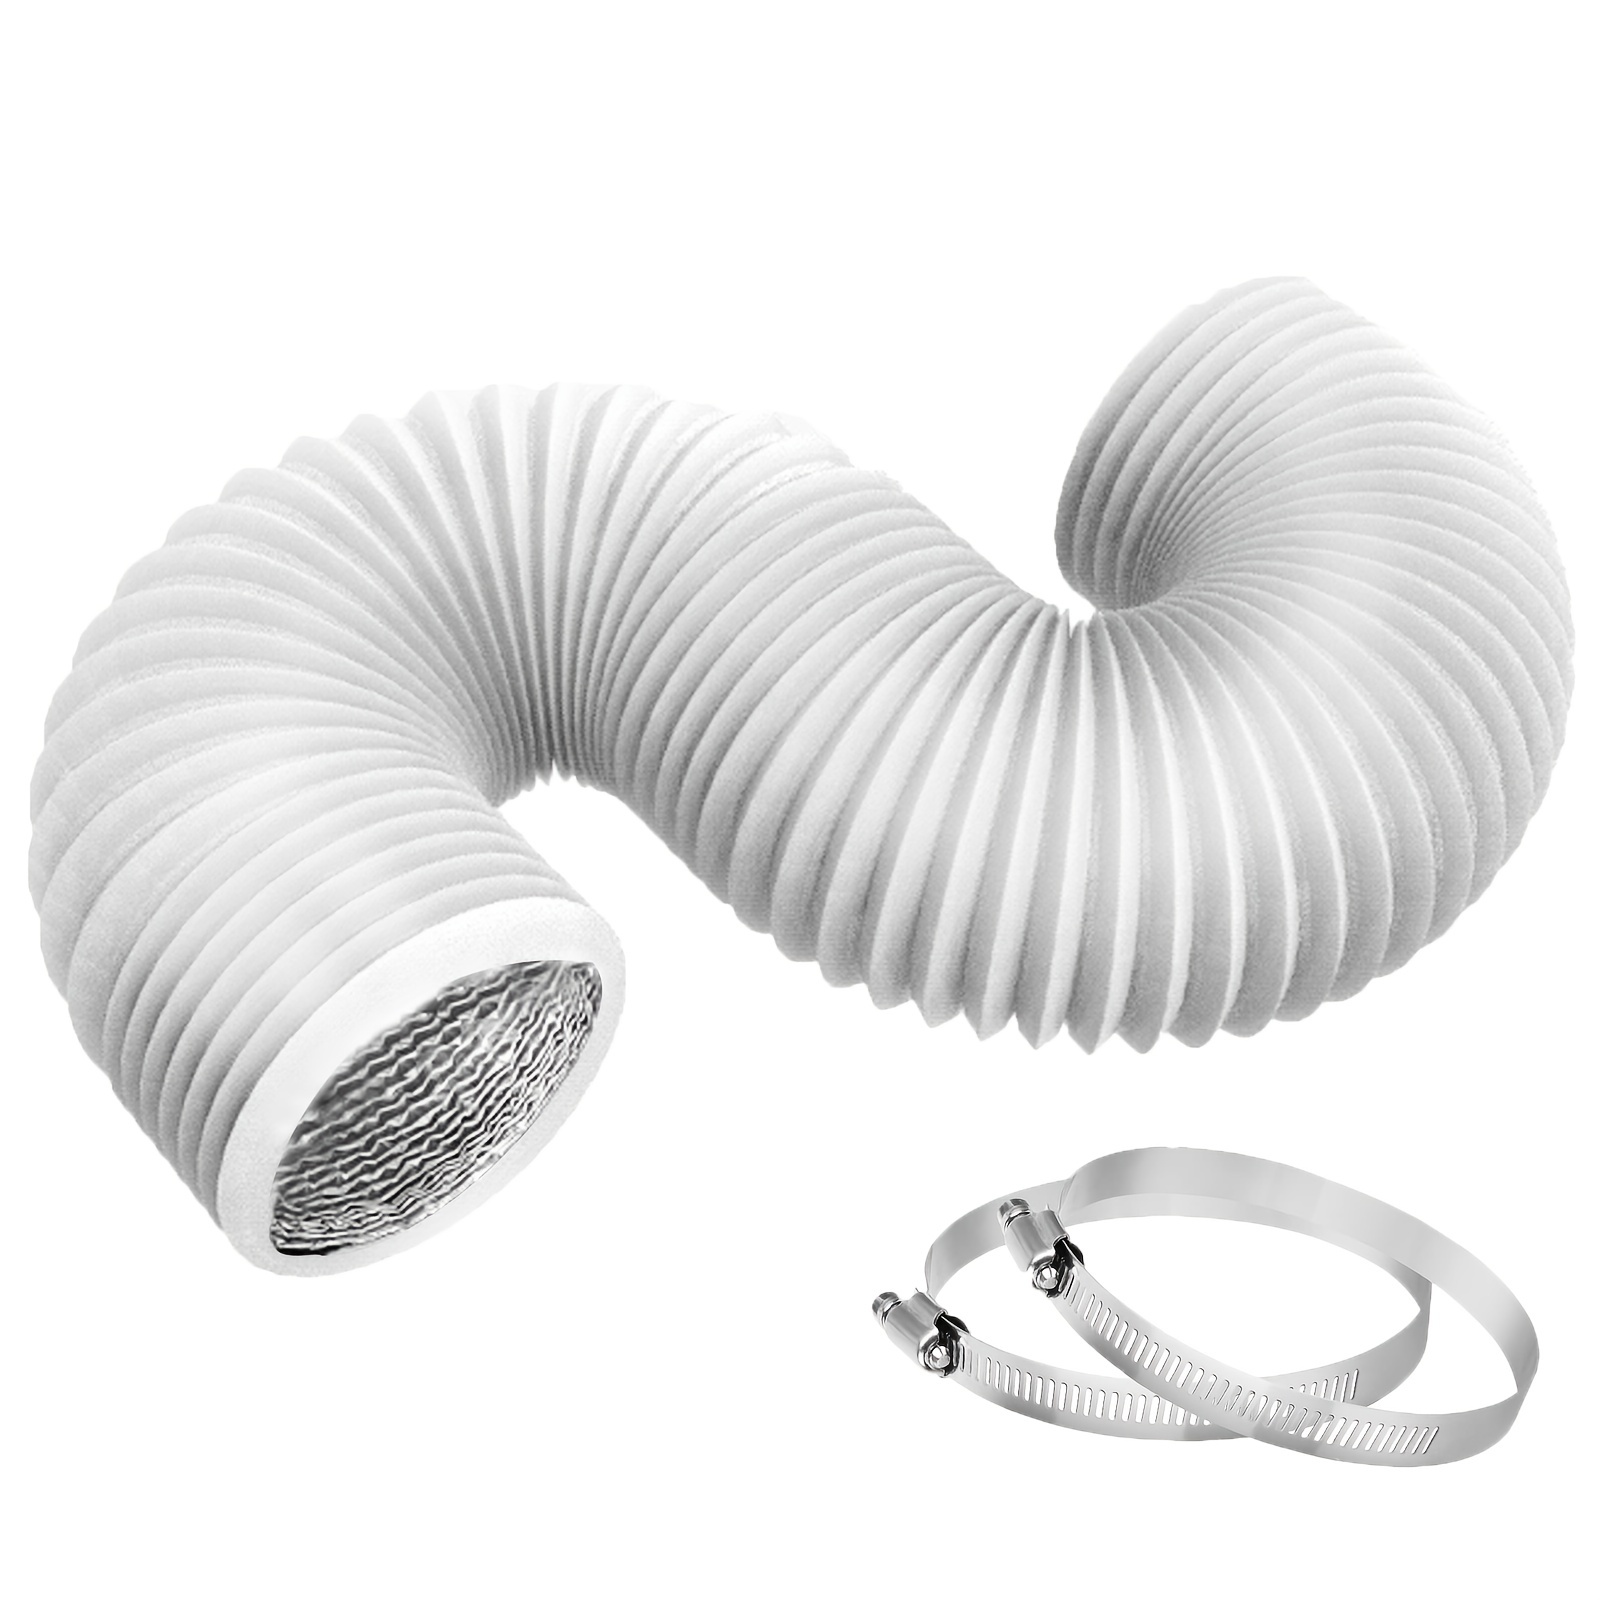 Funmit Kit de manguera de ventilación para secadora, 4 pulgadas de diámetro  por 10 pies de longitud, con 2 abrazaderas de tornillo sin fin de acero